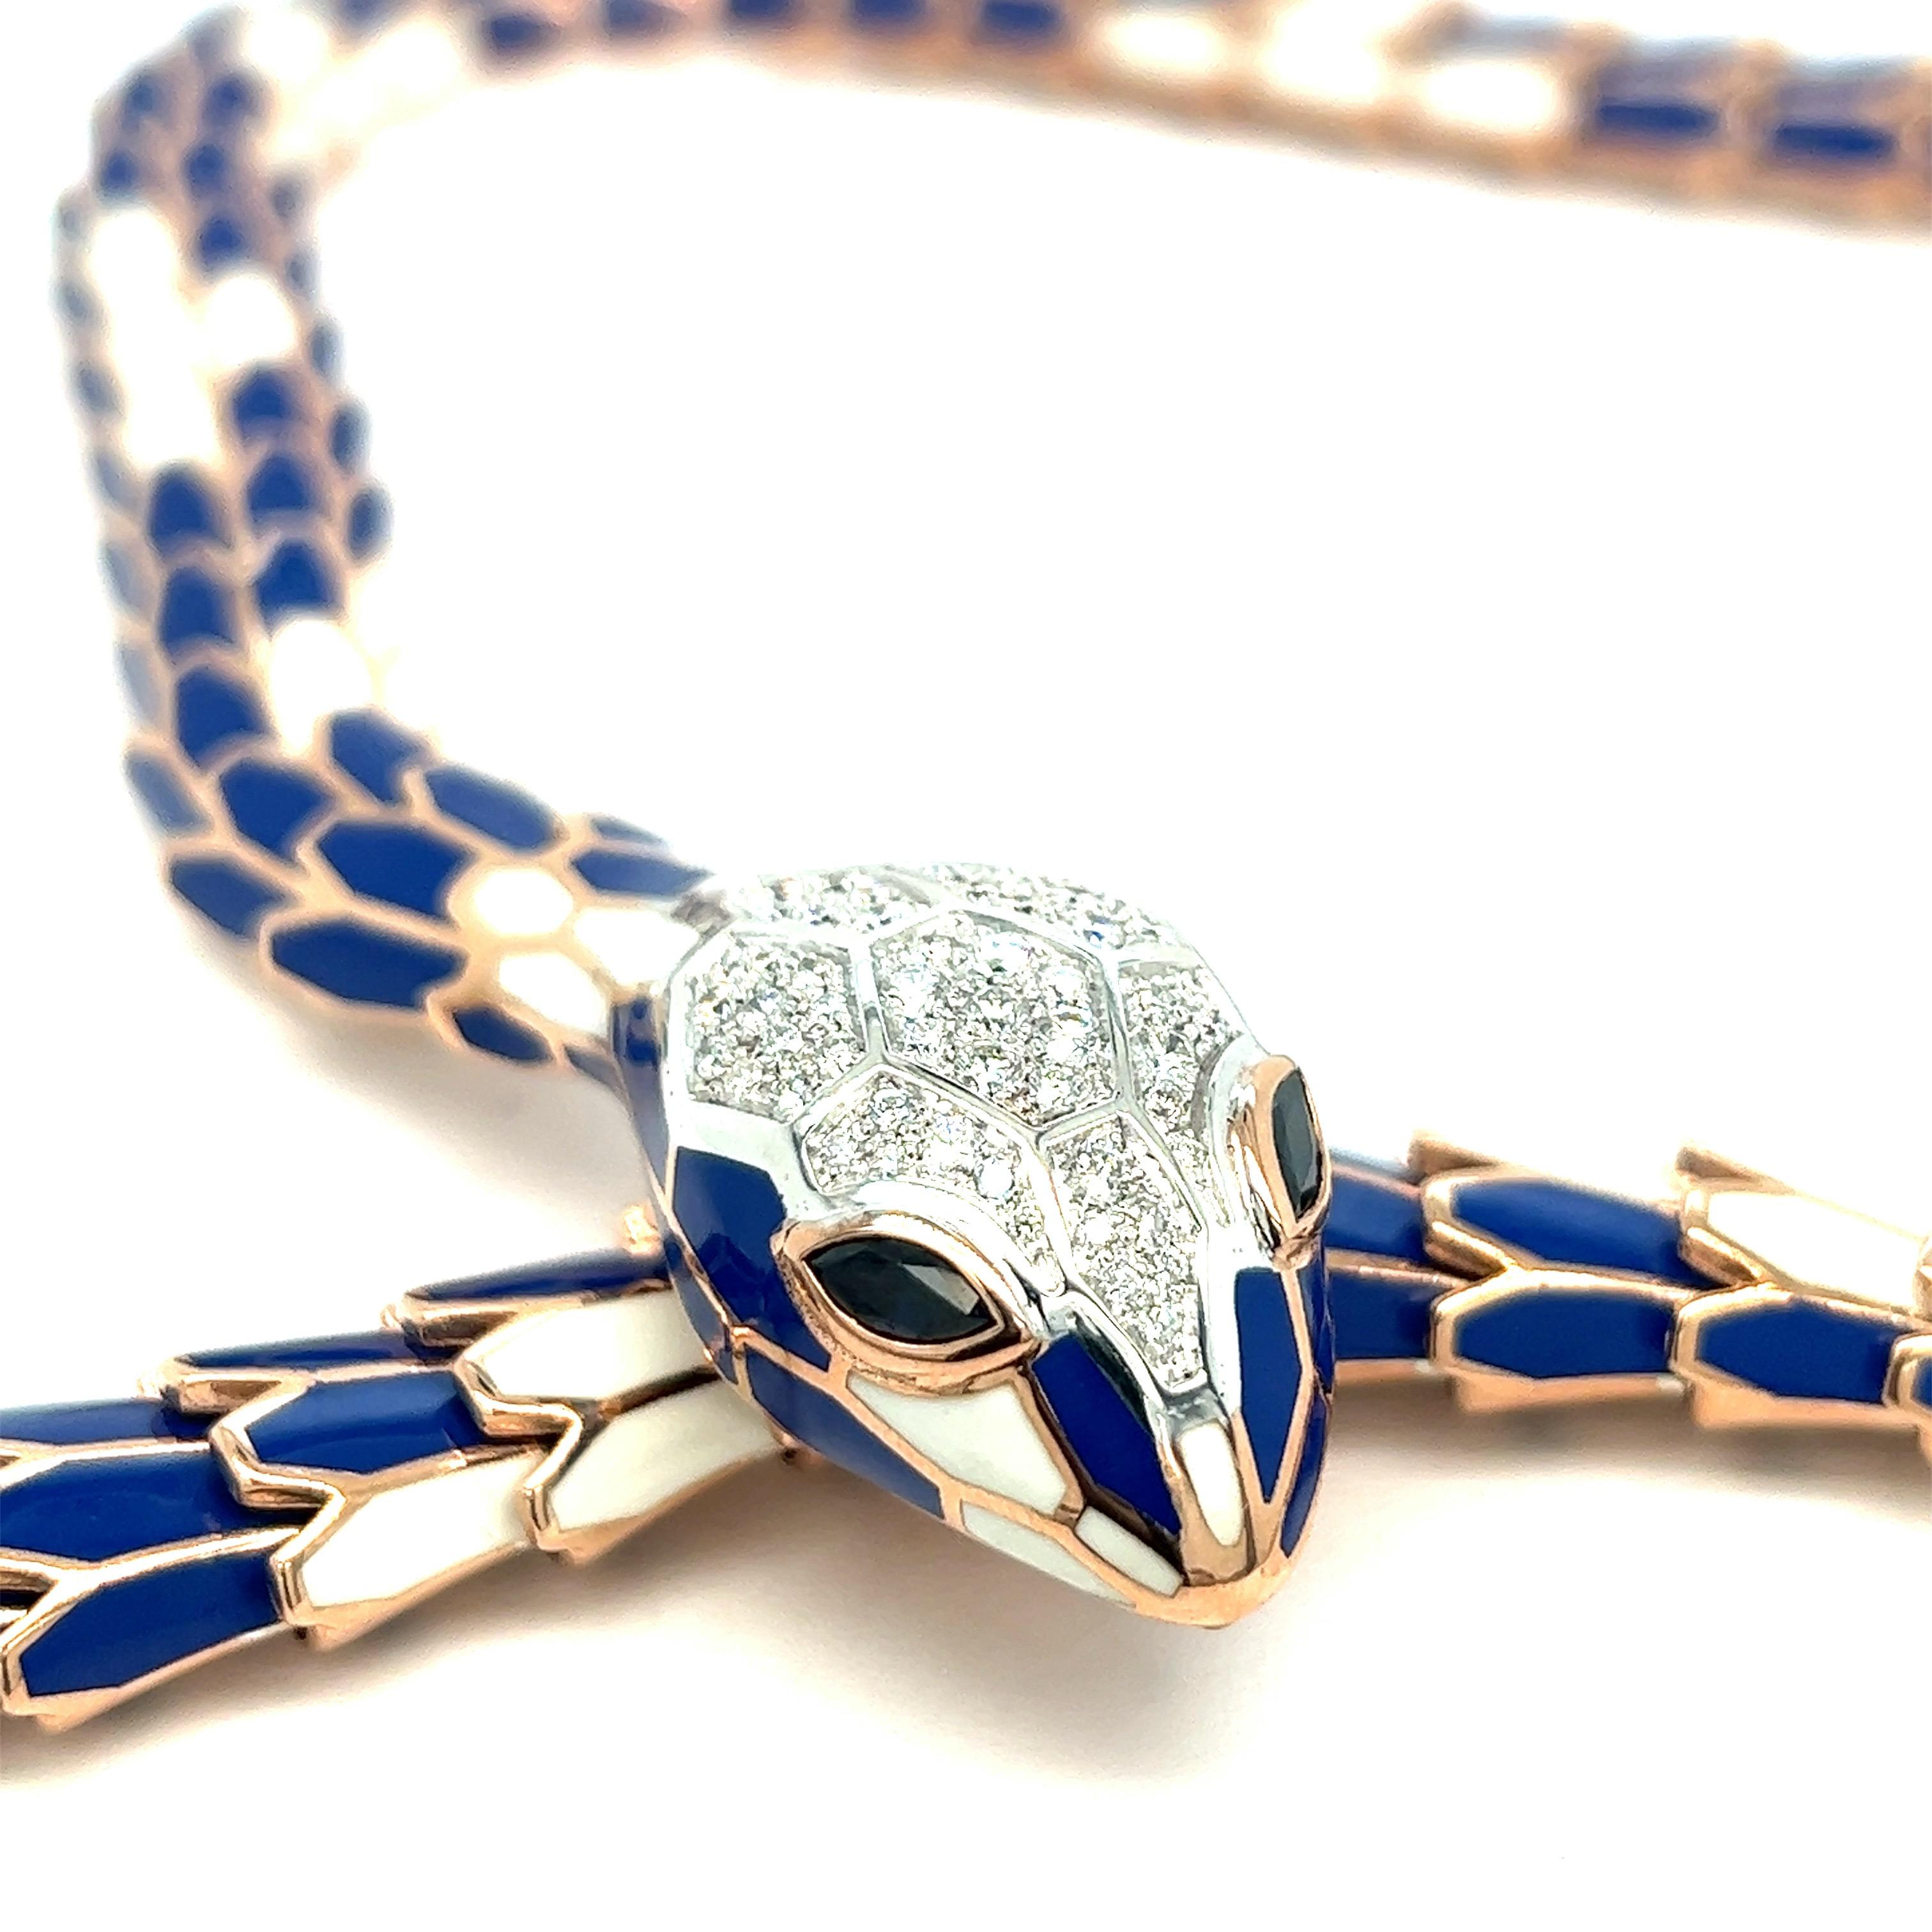 Collier serpent en émail bleu et blanc diamant saphir

Diamants ronds de 1,20 carats, saphirs de forme marquise de 0,56 carat, or blanc 18 carats et argent avec un ton d'or rose ; marqué 750, 925, D. 1,20, S. 0,56, N004RM20M01-0111

Taille :